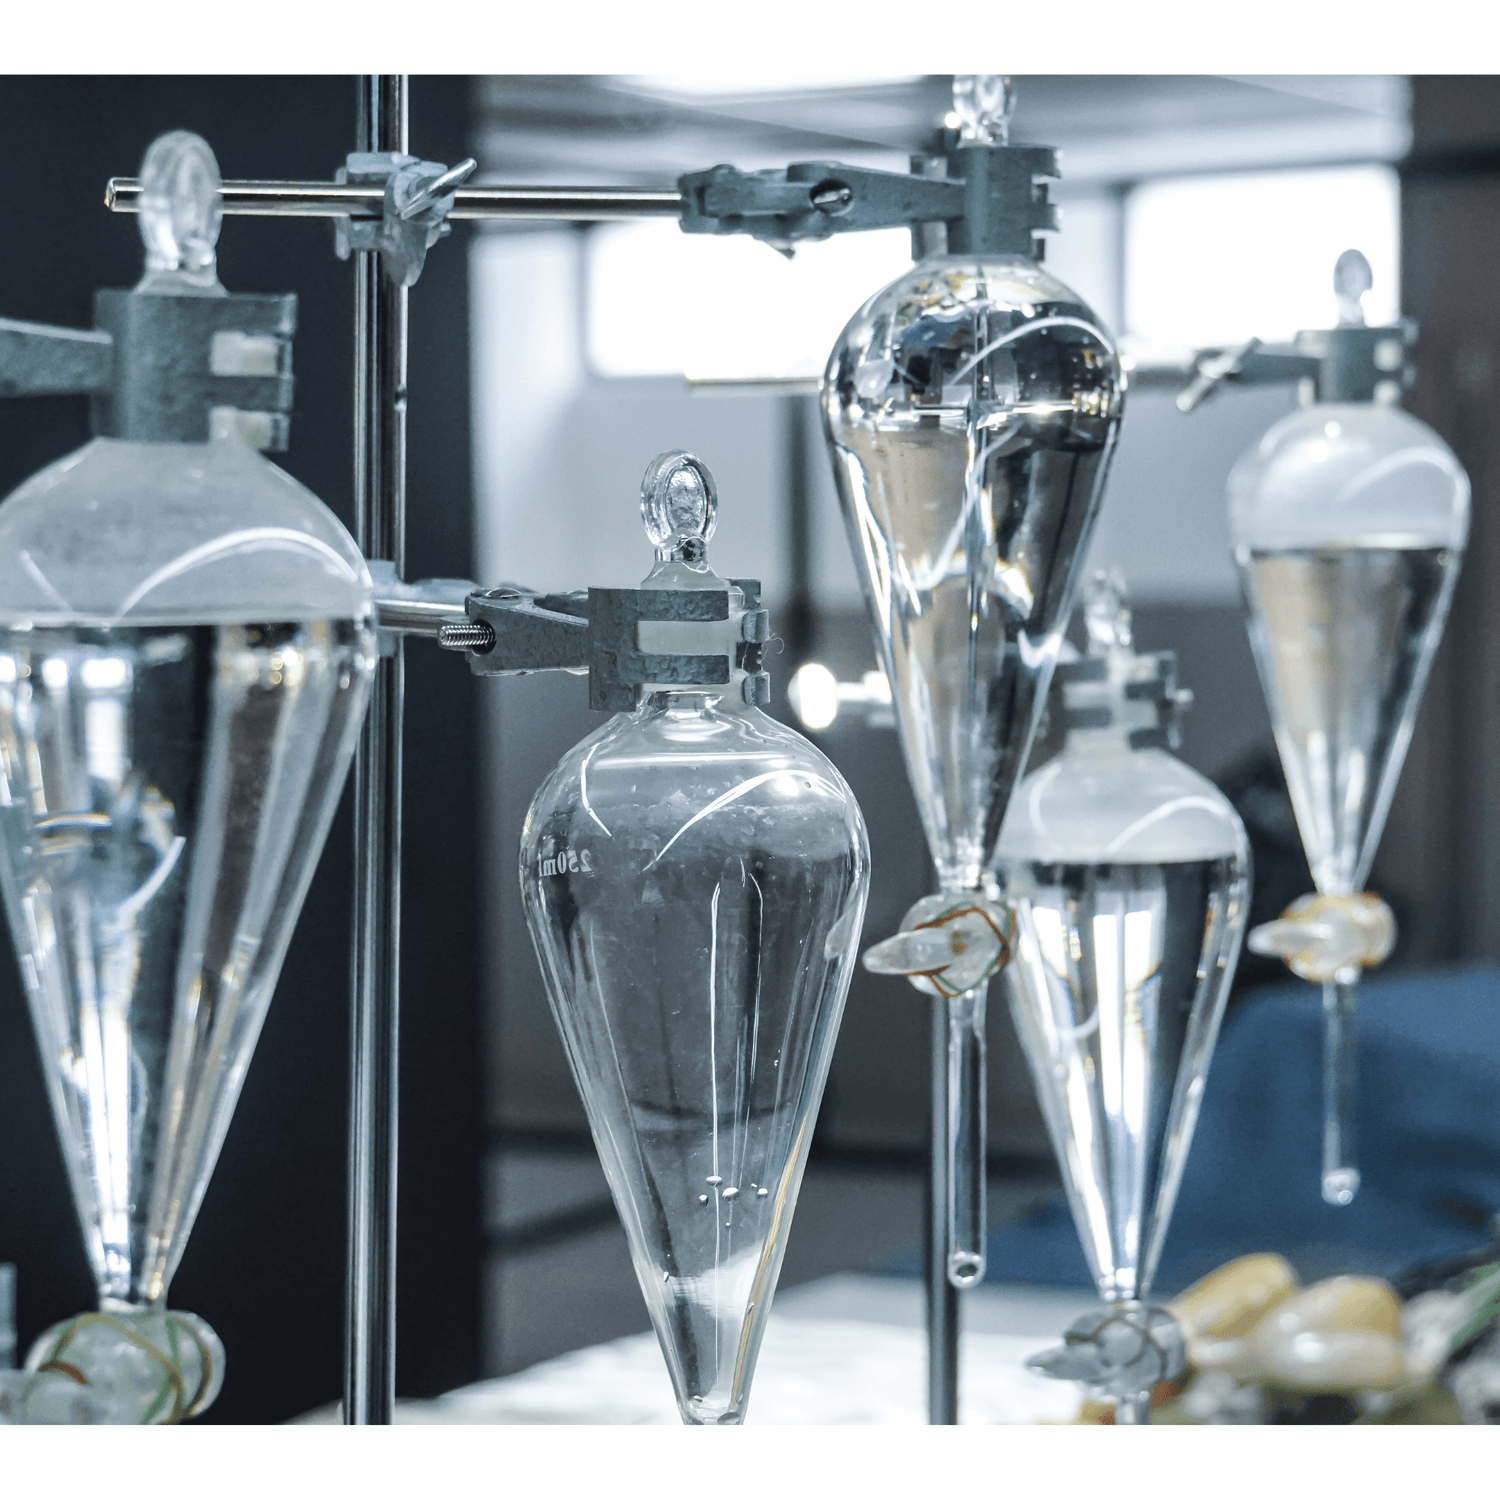 High Borosilikatglas 3.3 und Kristallglas für einzigartige Glasprodukte